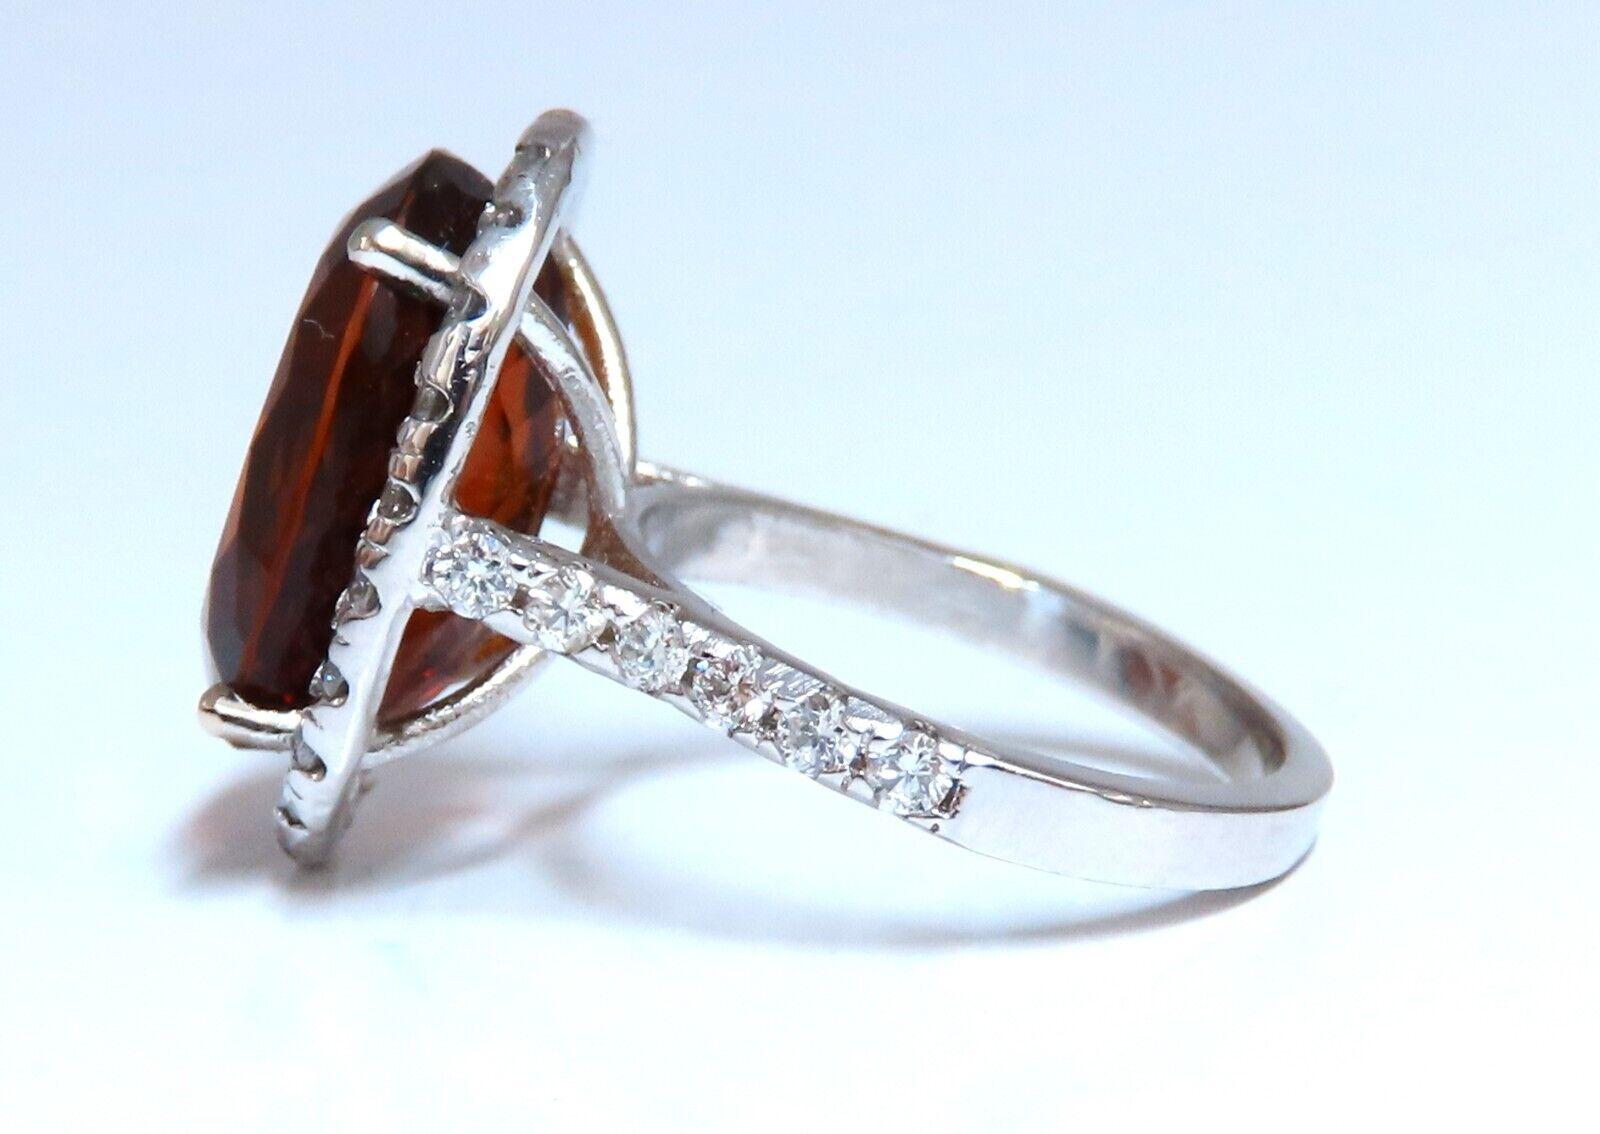 GIA-zertifizierter Ring mit 9,89 Karat natürlichen Citrin-Diamanten.

Ovaler Schliff, saubere Klarheit und transparent.

Braun-orange Farbe.


16,3 x 12,8 mm


1,19ct natürliche runde Diamanten an der Seite

G-Farbe vs2 Klarheit

14 Karat Weißgold